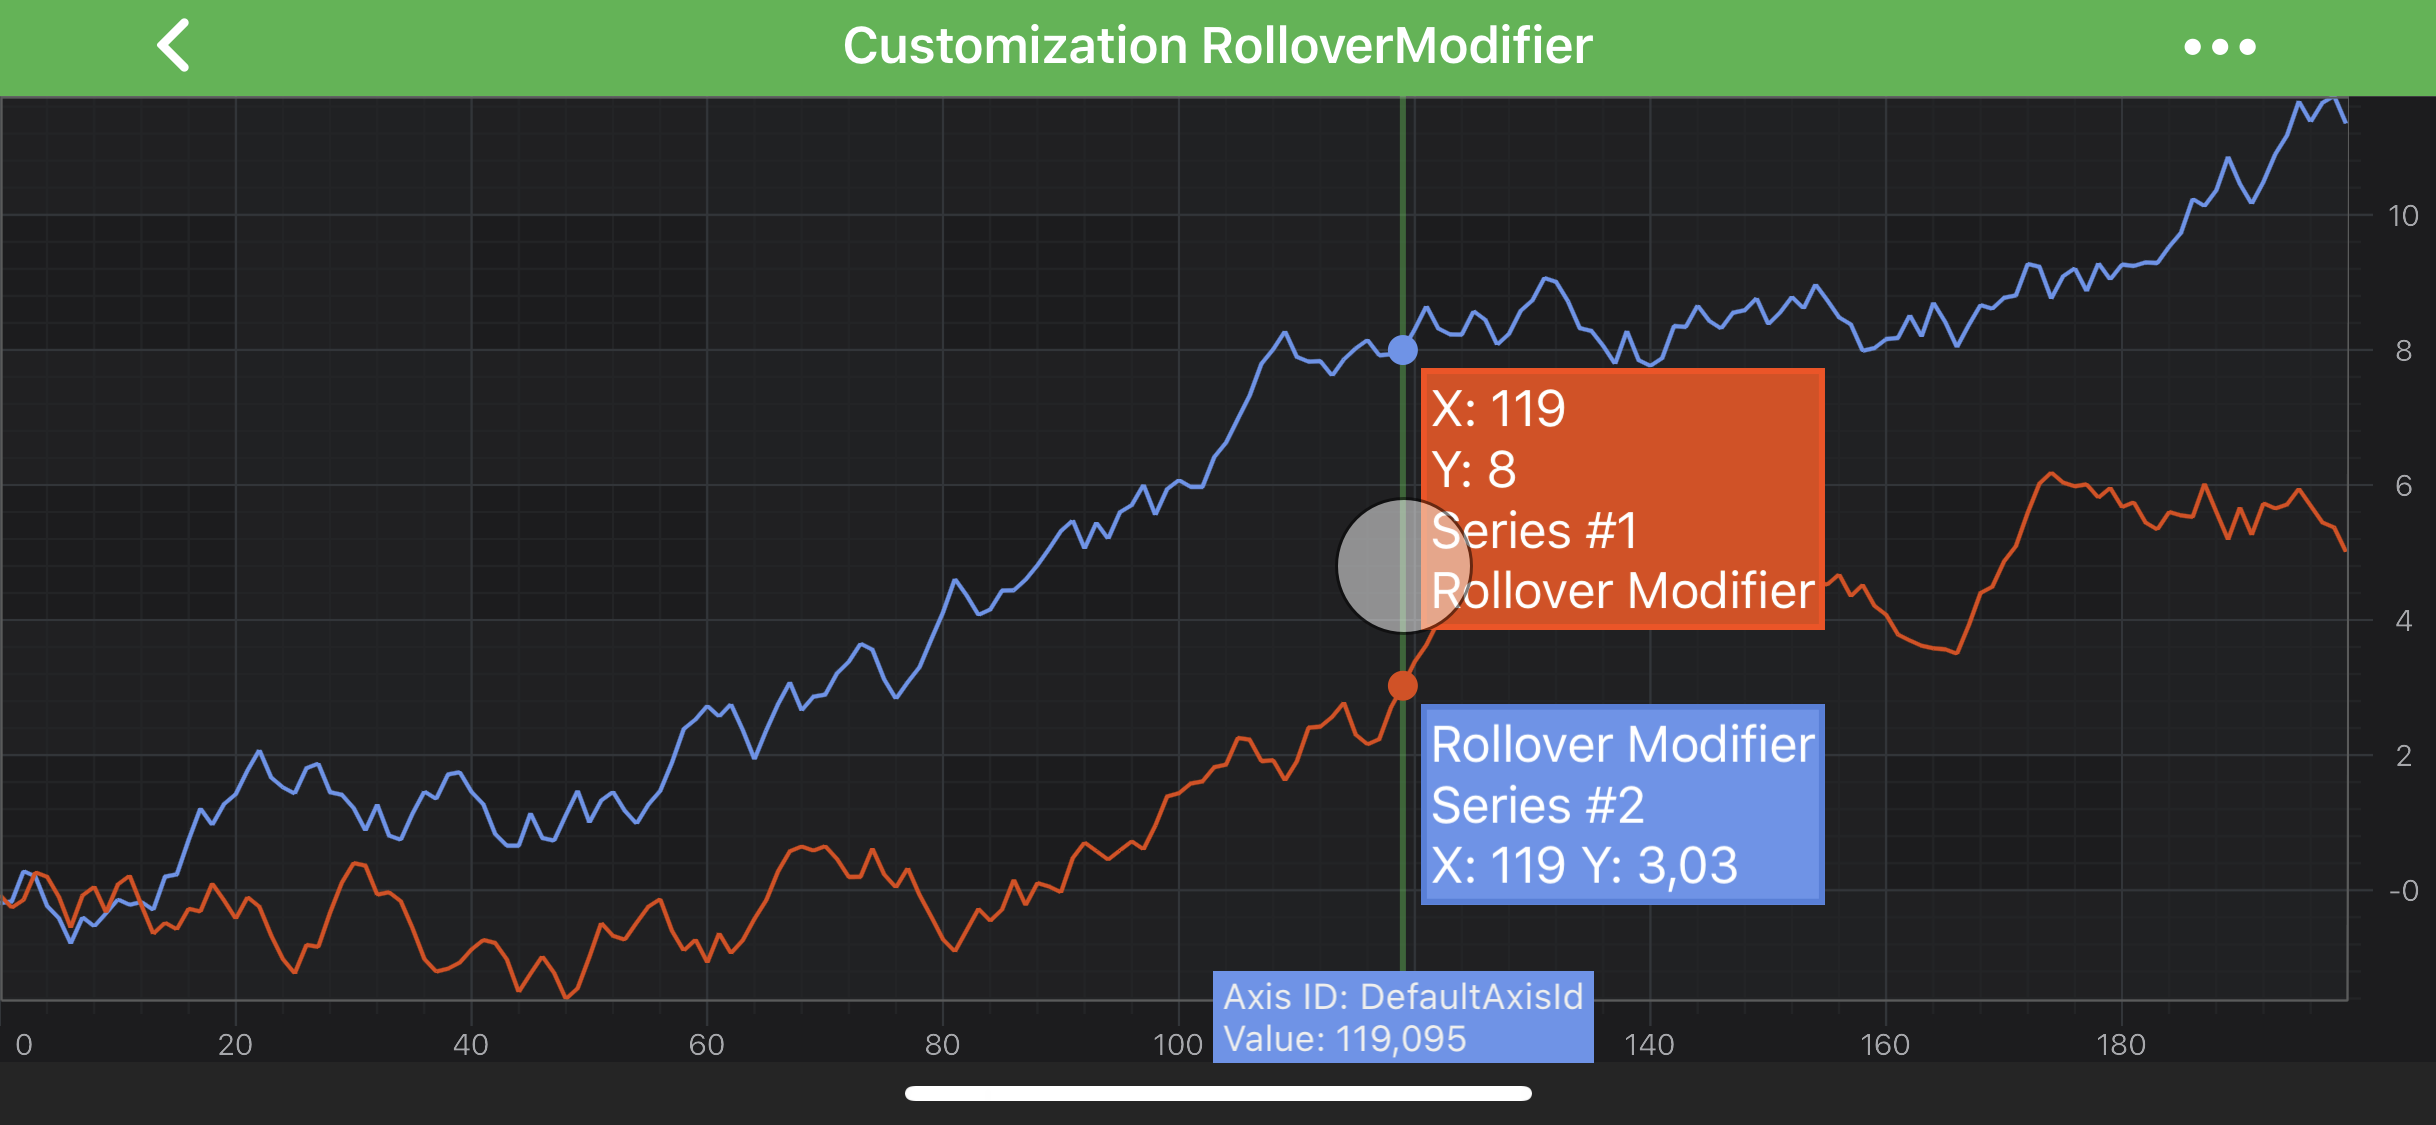 Customization Rollover Modifier